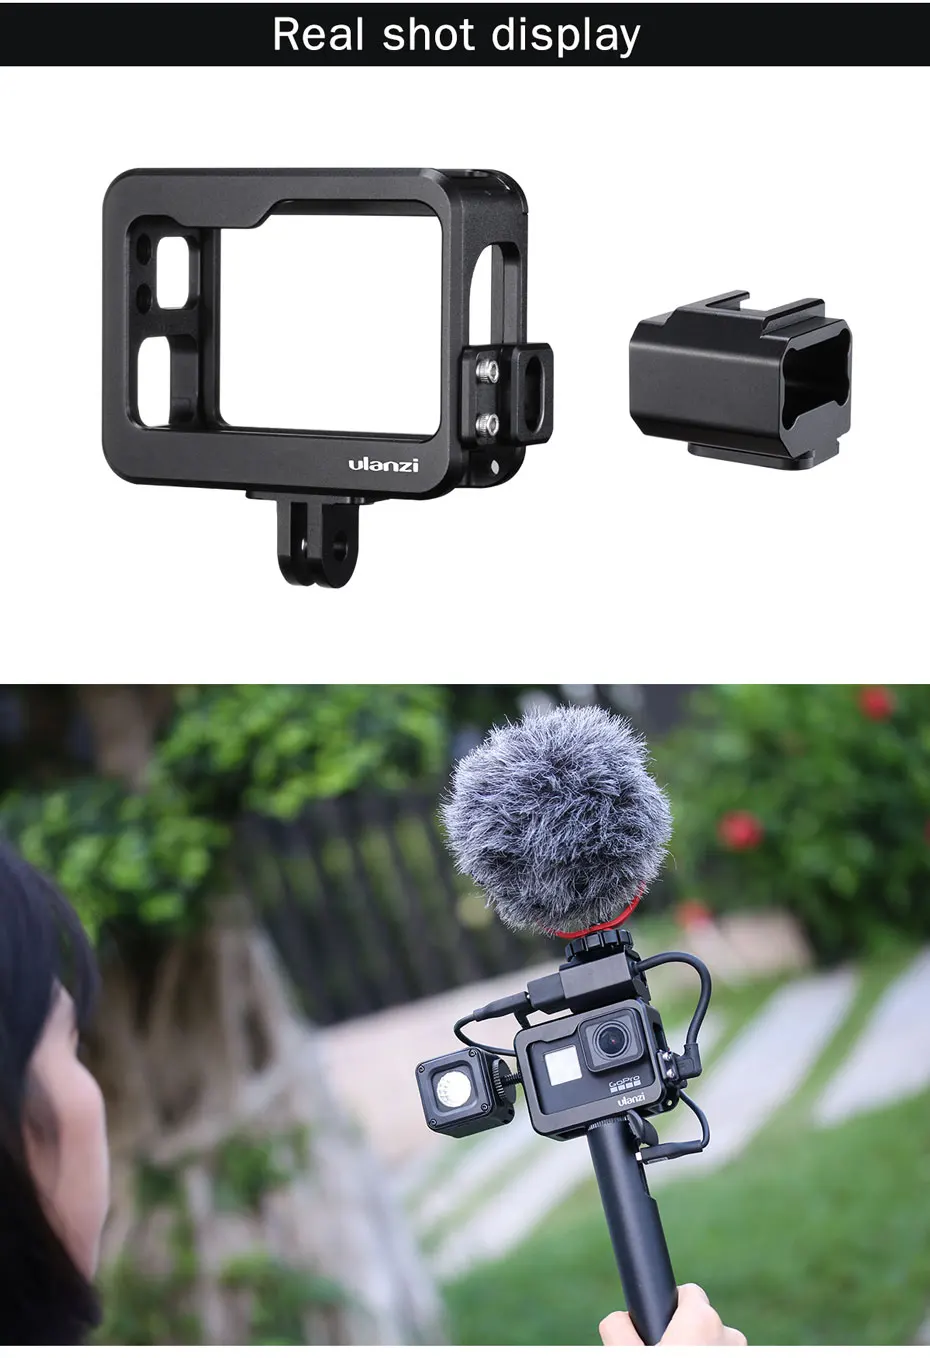 Ulanzi V3 Pro металлический чехол для камеры Vlog с задней крышкой для крепления холодного башмака 3,5 мм адаптер для микрофона для Gopro 7/6/5